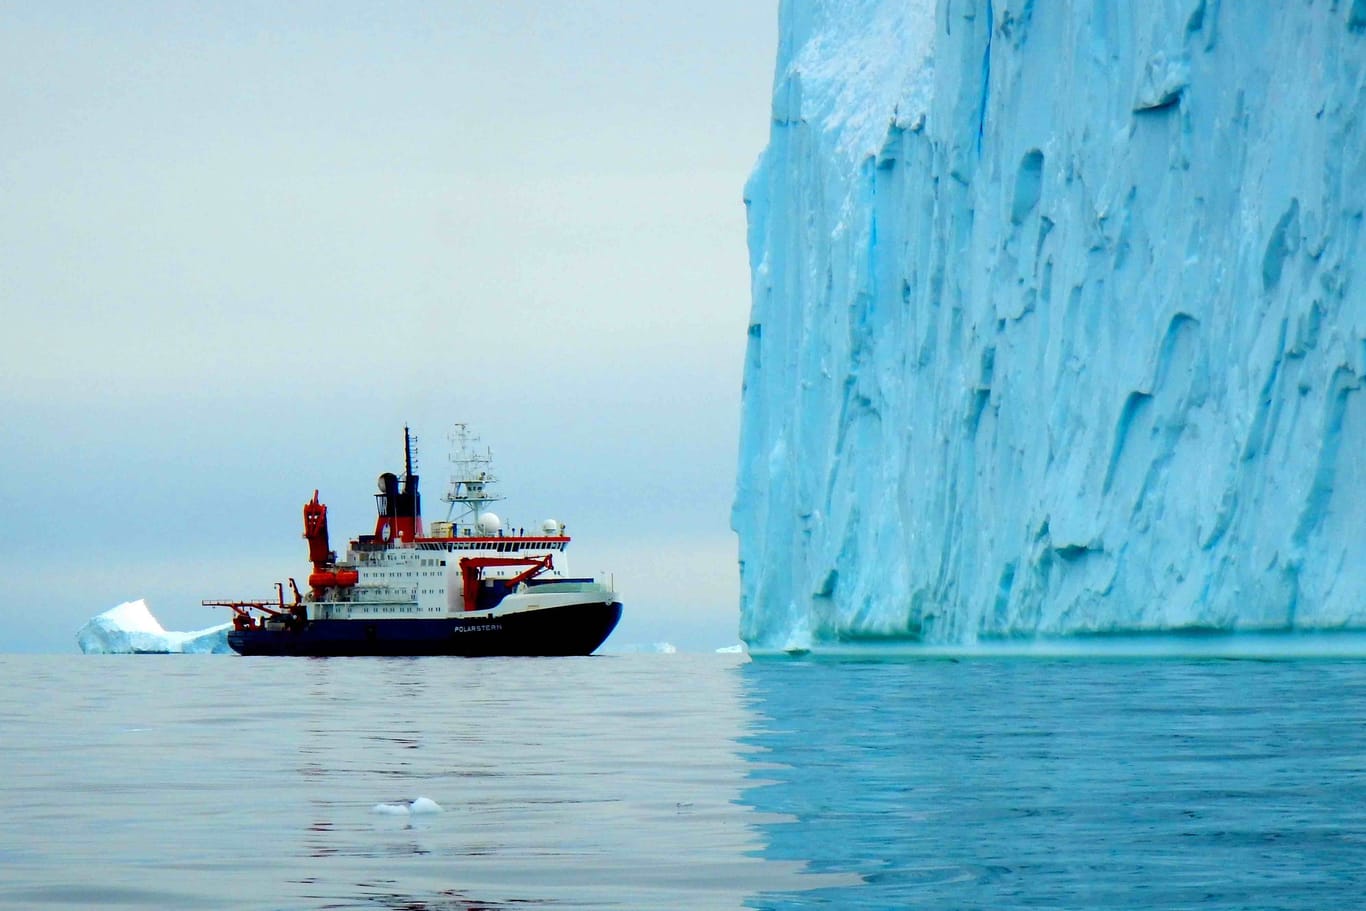 Der Forschungseisbrecher "Polarstern" während der Expedition im Amundsenmeer.